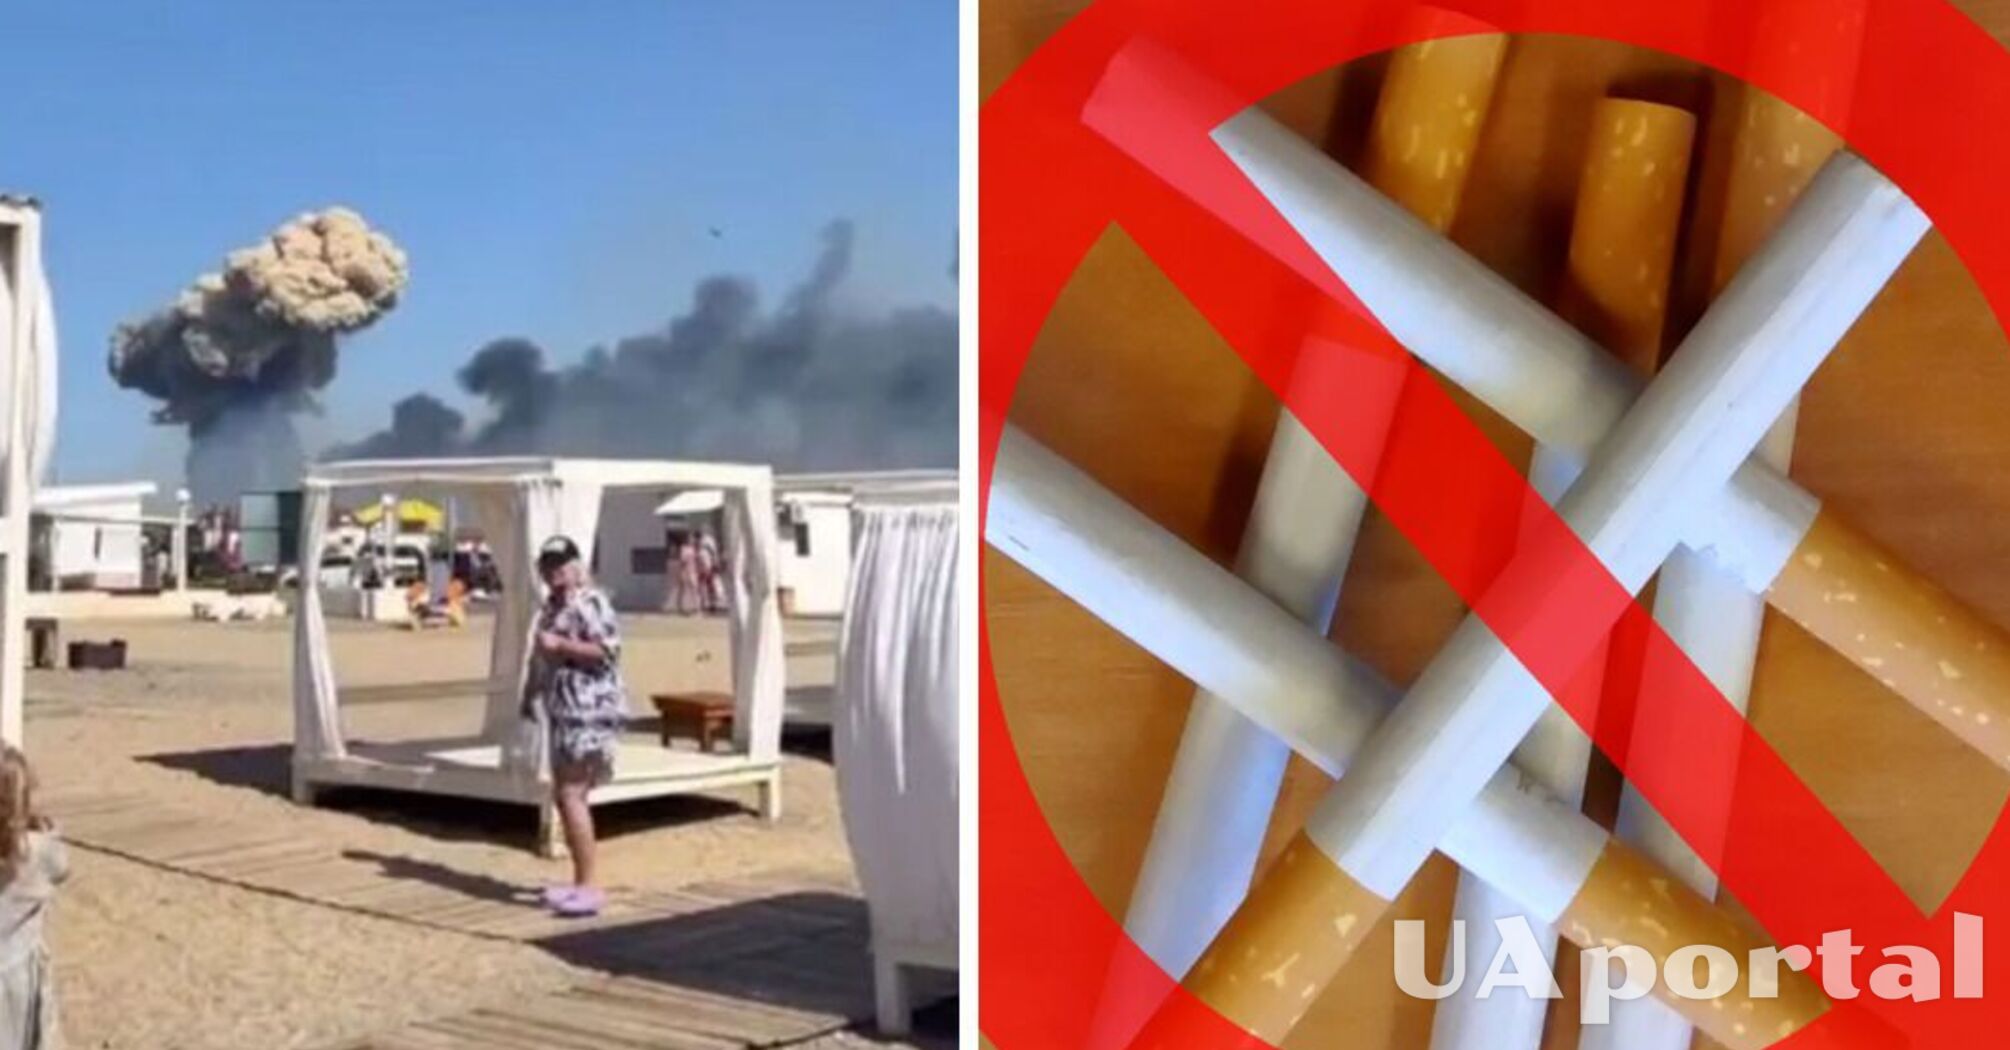 'Напоминаем о запрете курения в неустановленных местах': в Минобороны Украины потролили взрывы в Крыму